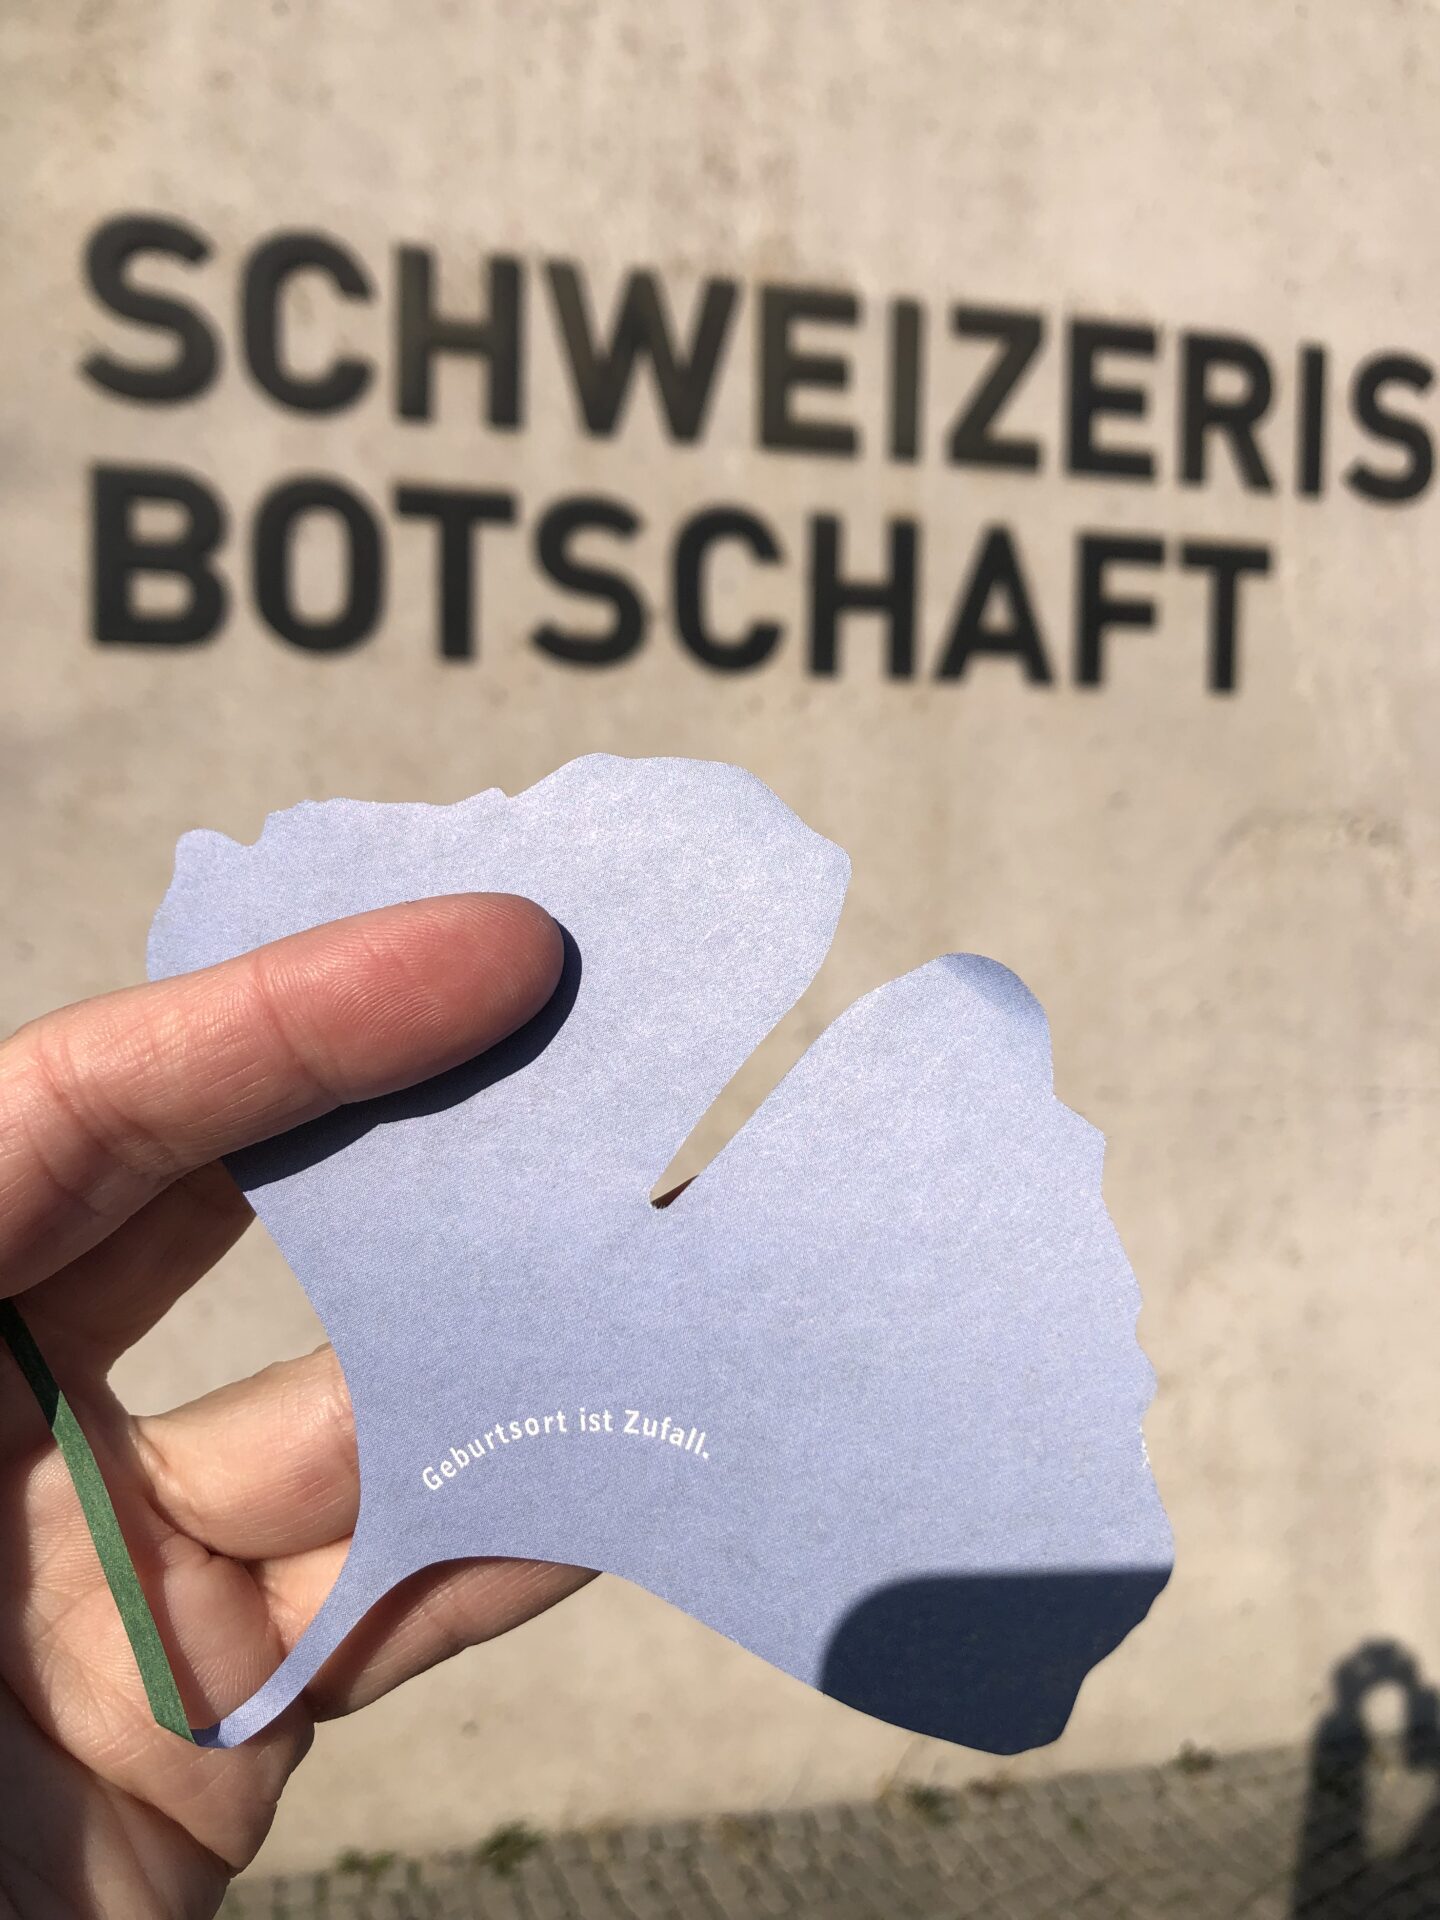 Pipilotti Rist, Schweizer Botschaft, Geburtsort ist Zufall, Ginkgoblatt, Blätter im Wind, Installation, Berlin
